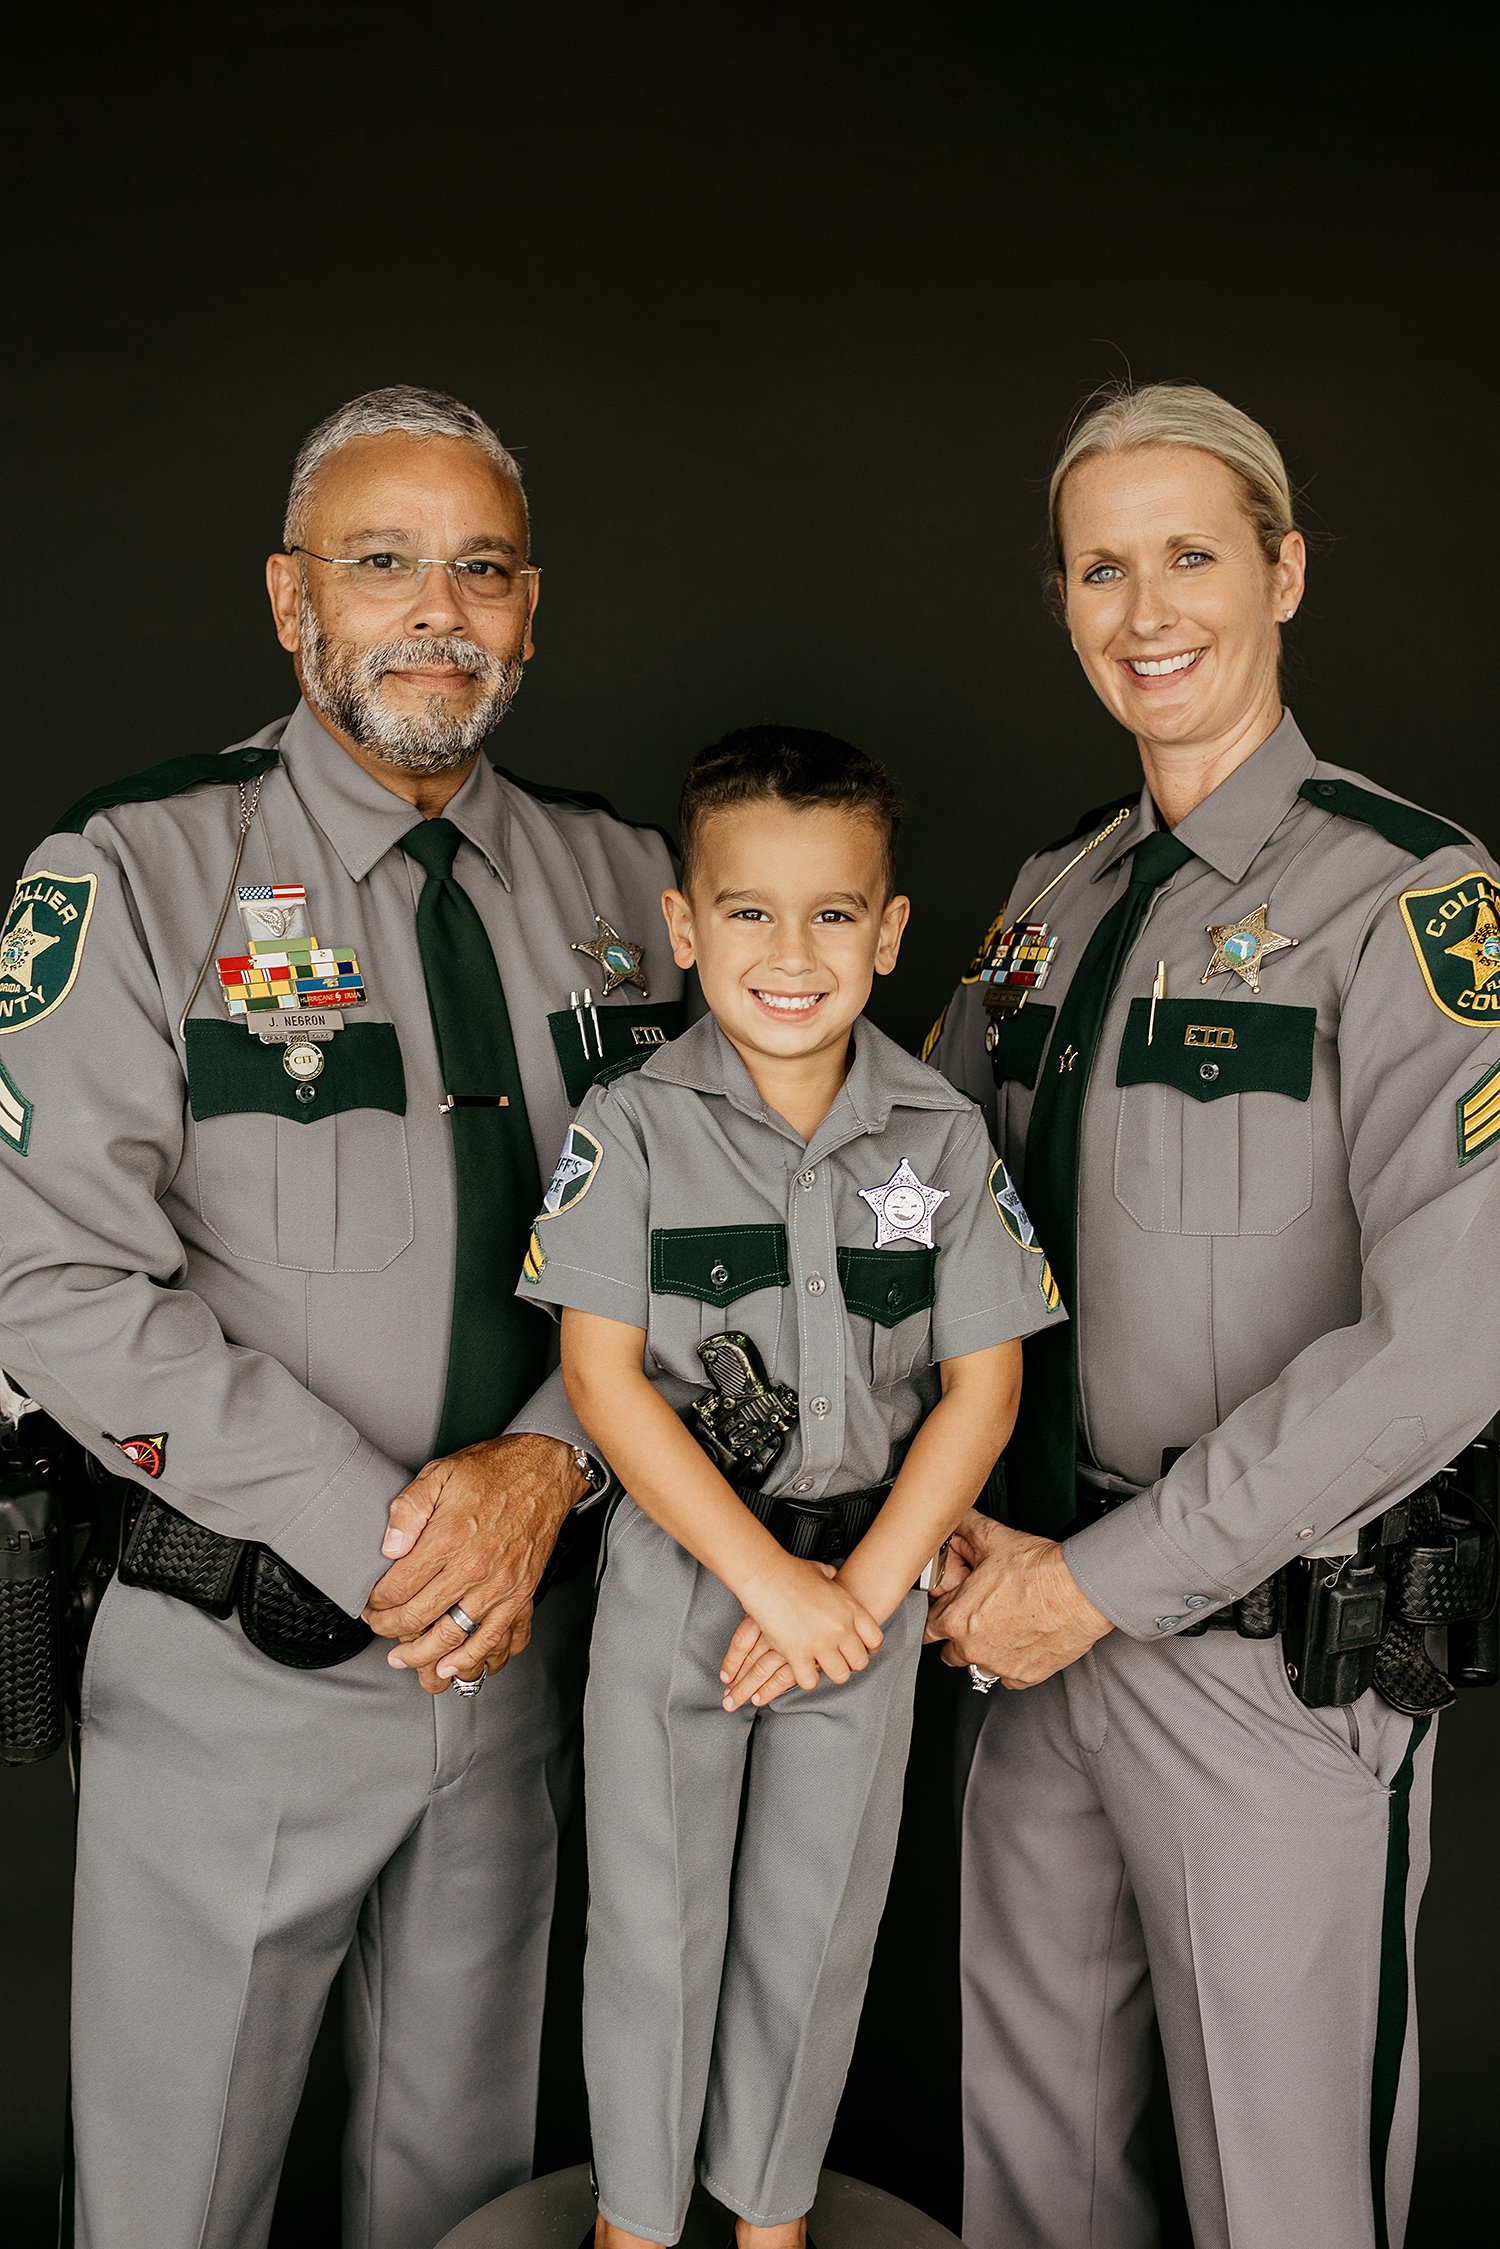 NAPLES FL POLICE OFFICER FAMILY PHOTOSHOOT-1293.jpg